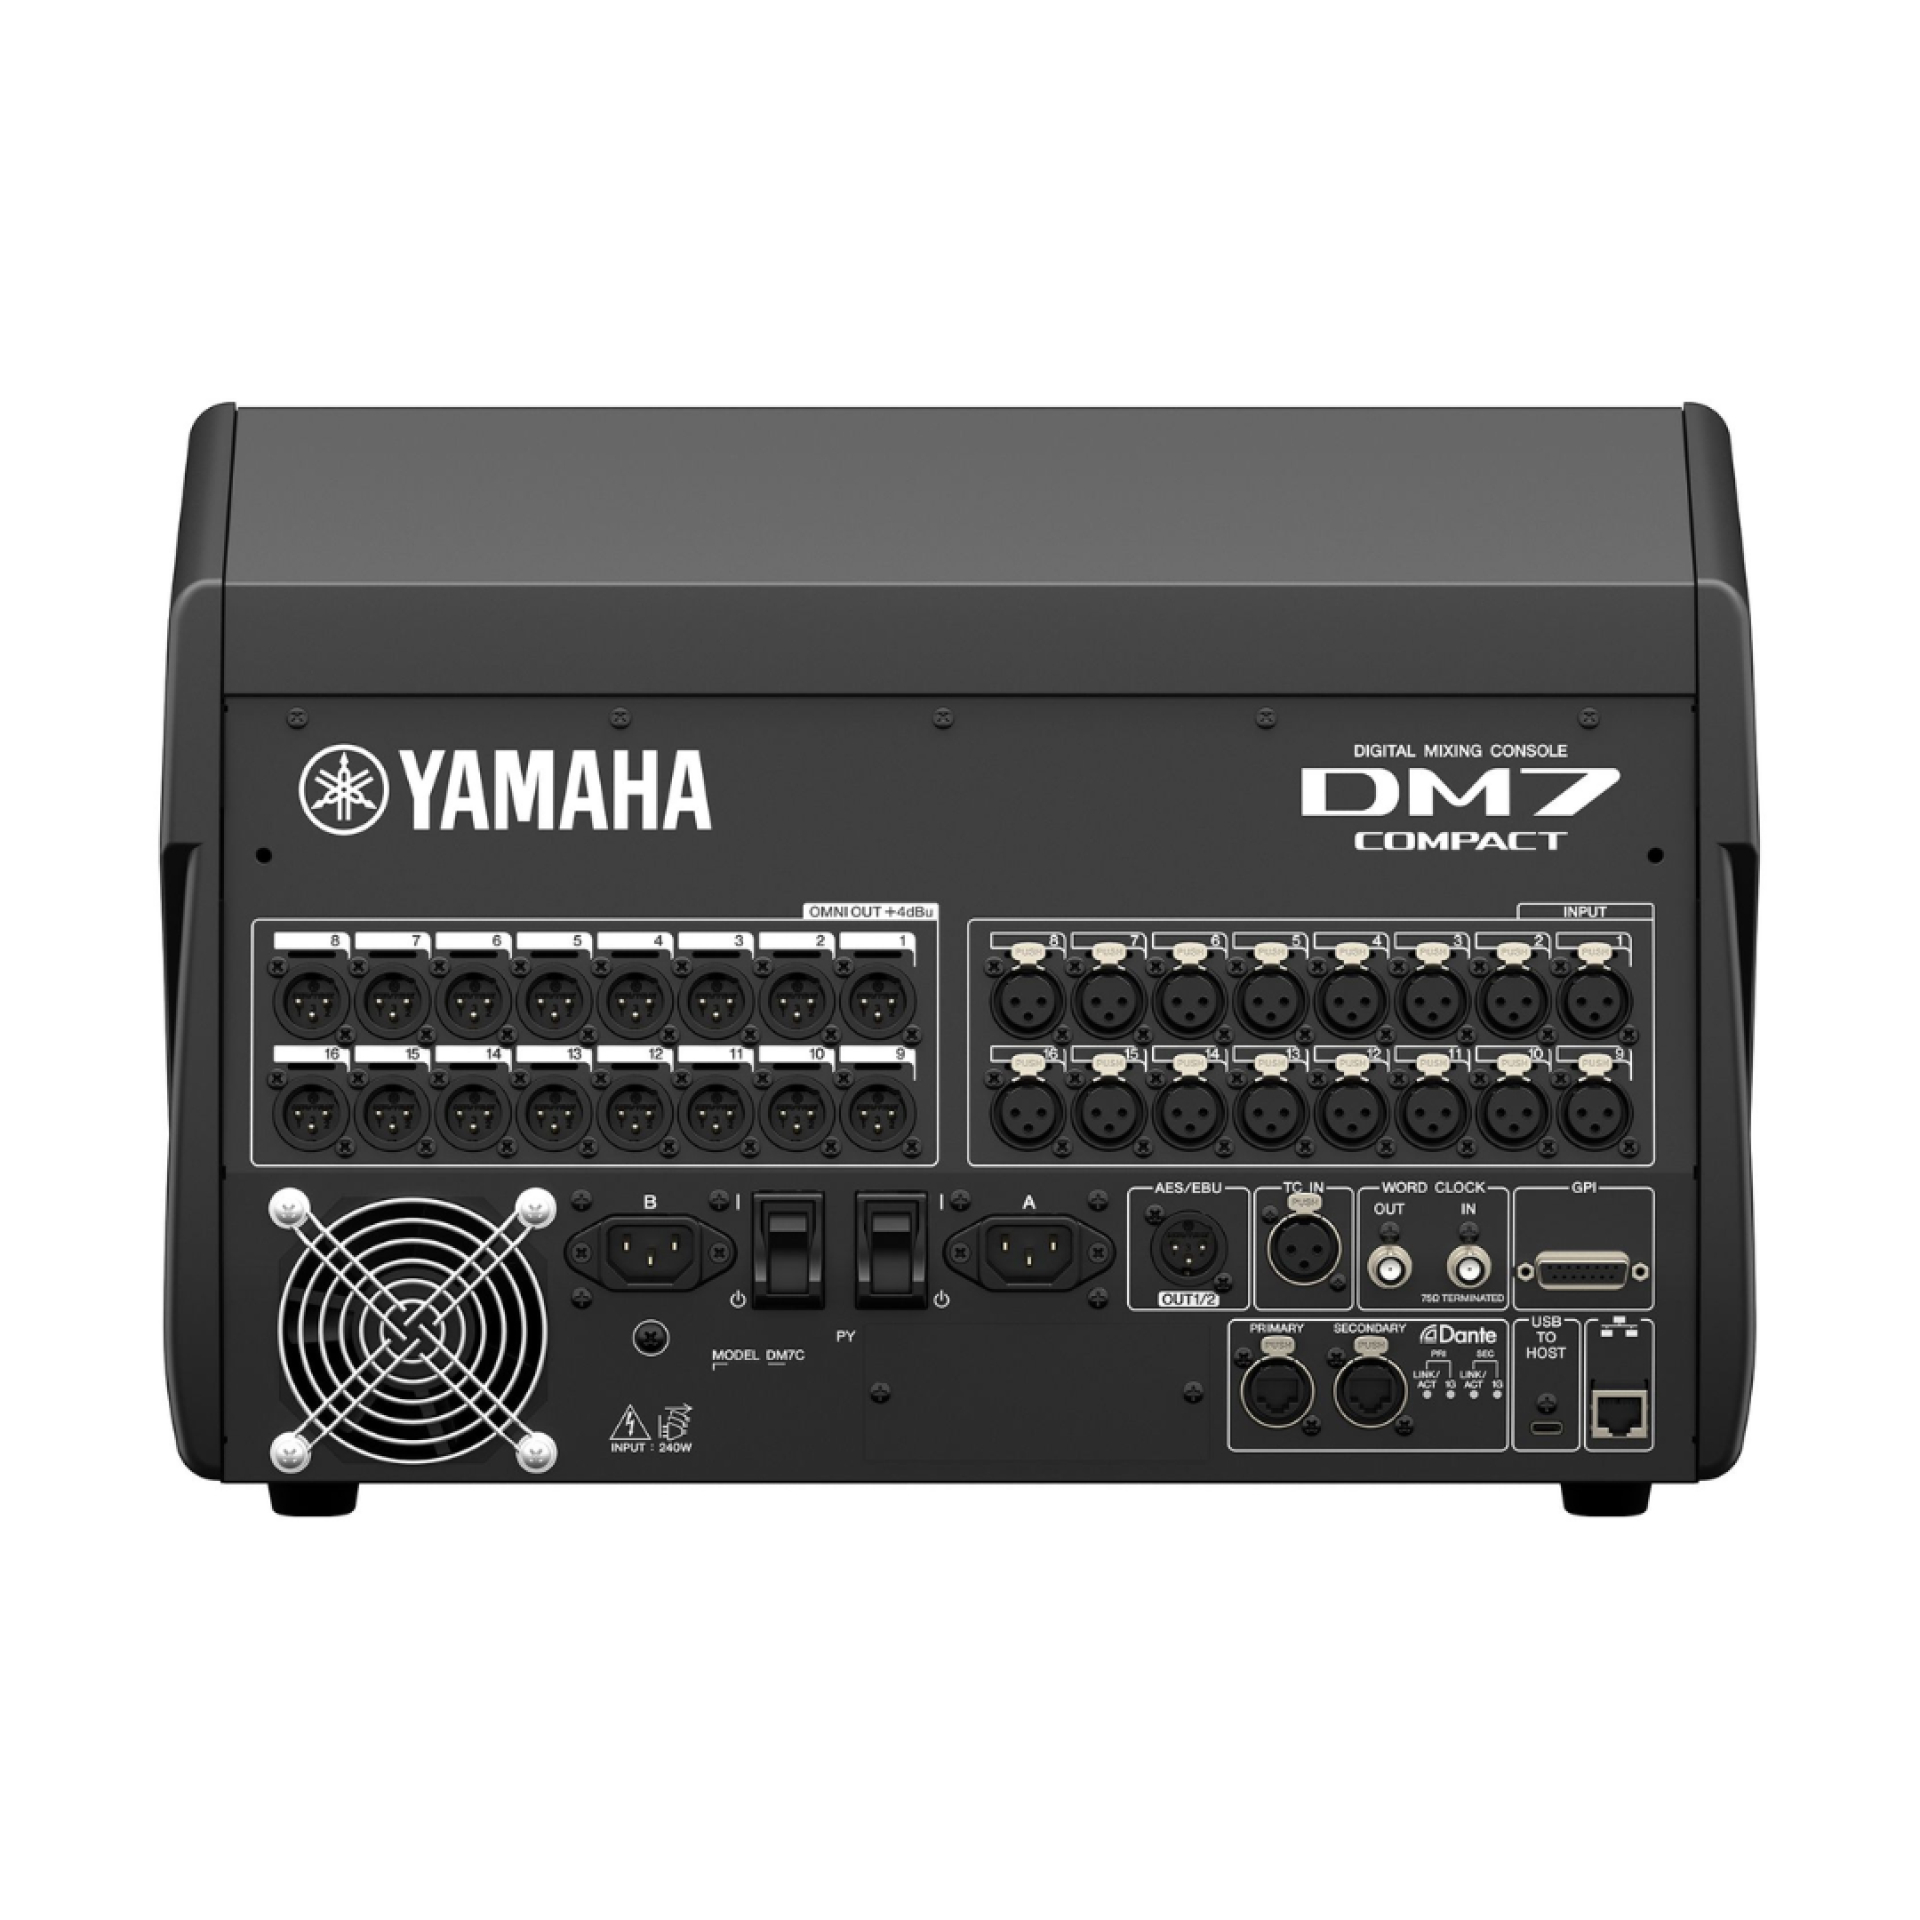 Yamaha DM7 Compact Digital Mixer - Rear